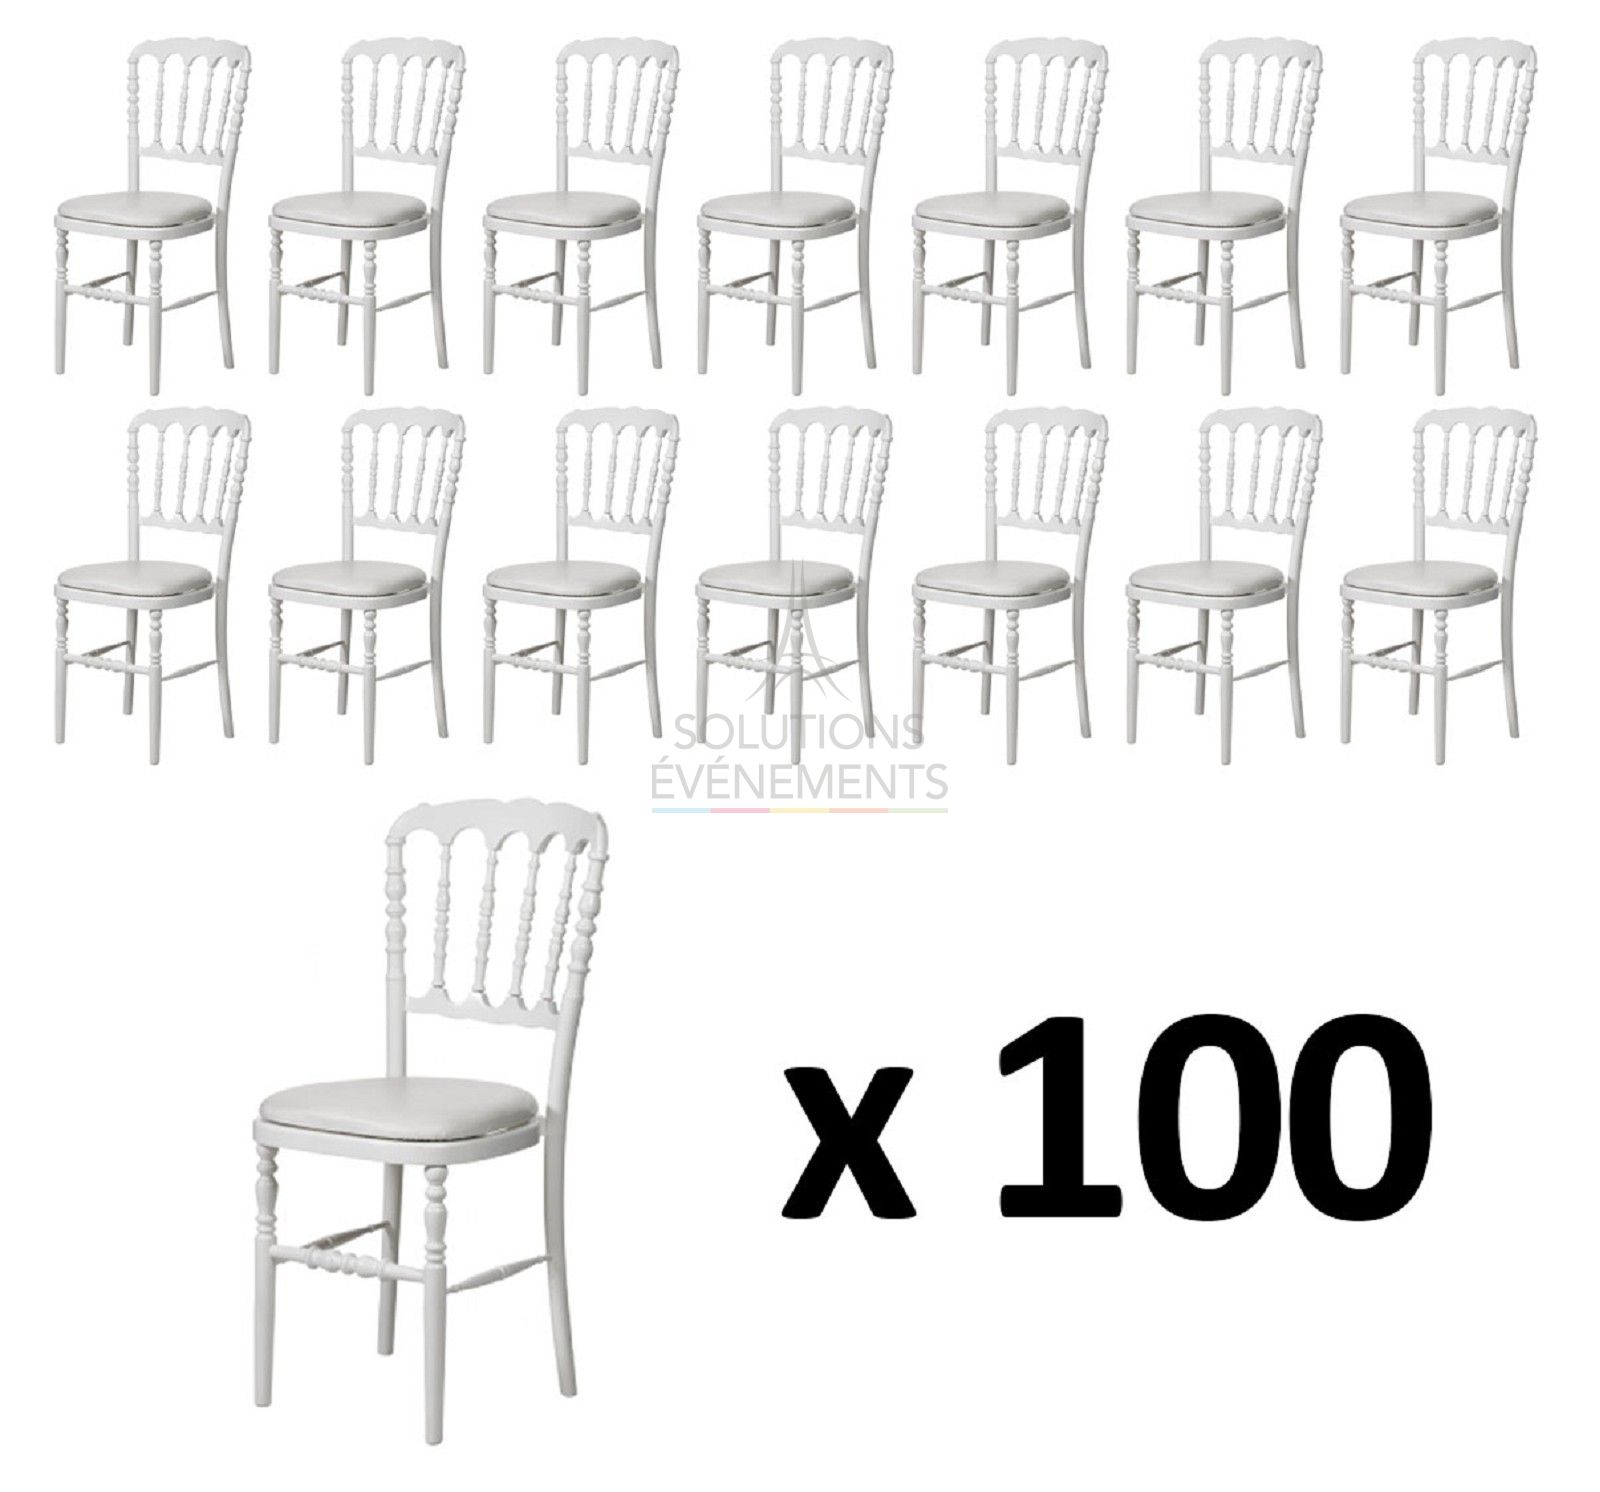 Location de 100 chaisse napoleon blanche avec assise blanche